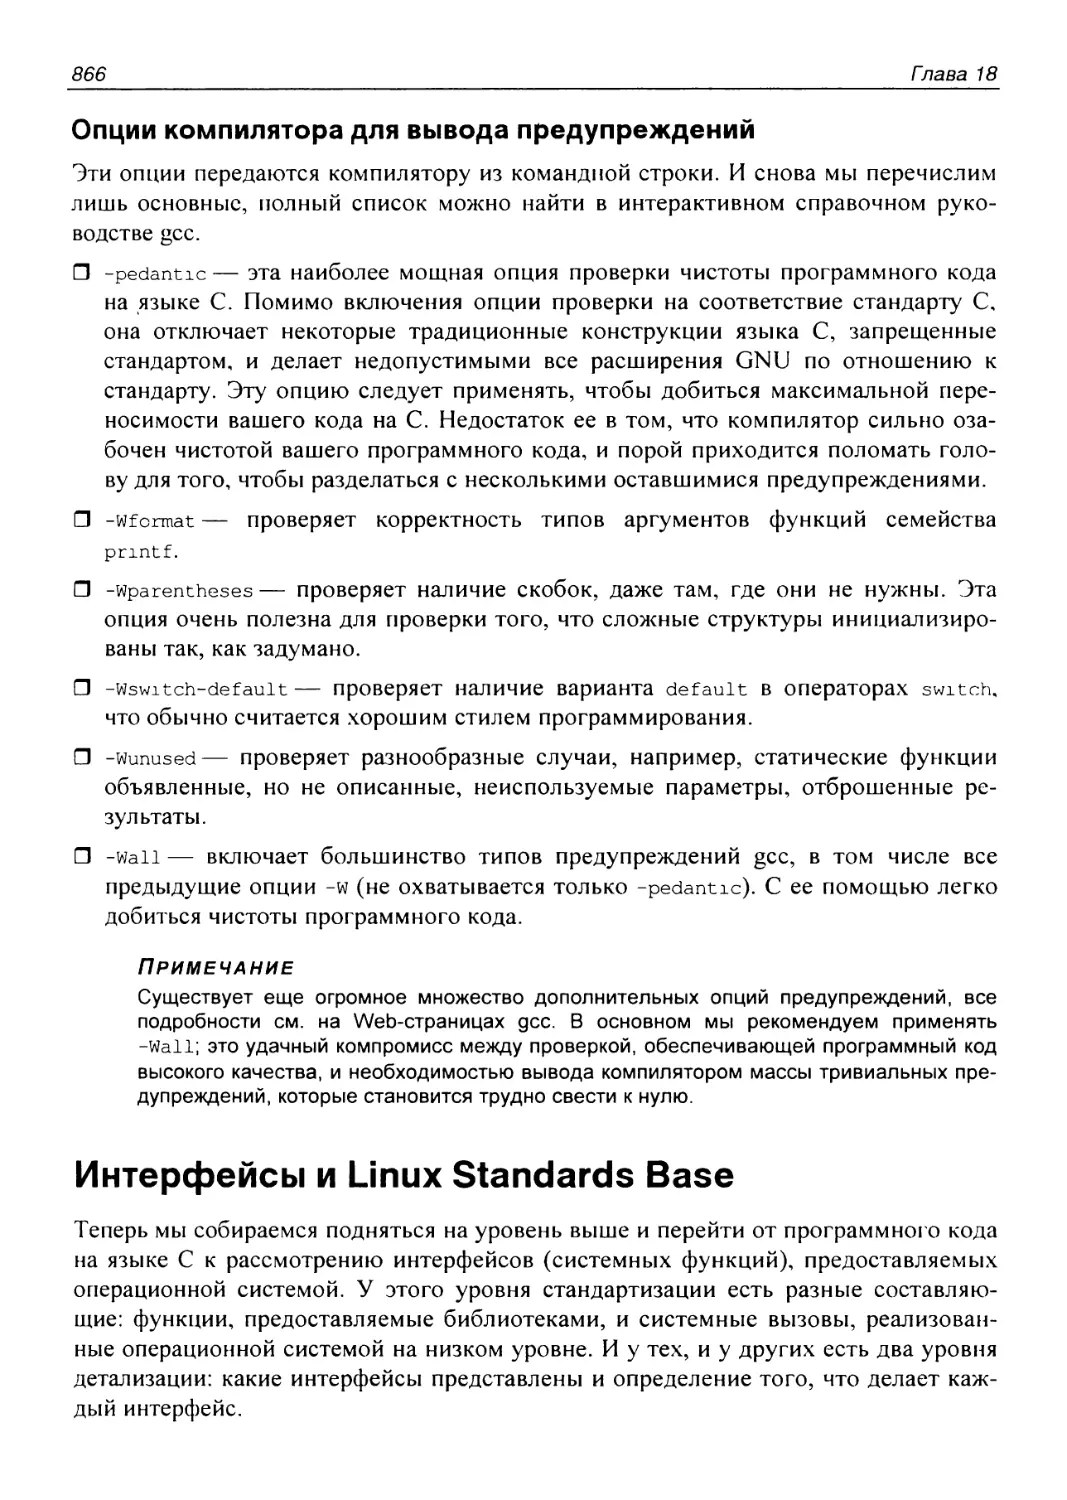 Интерфейсы и Linux Standards Base